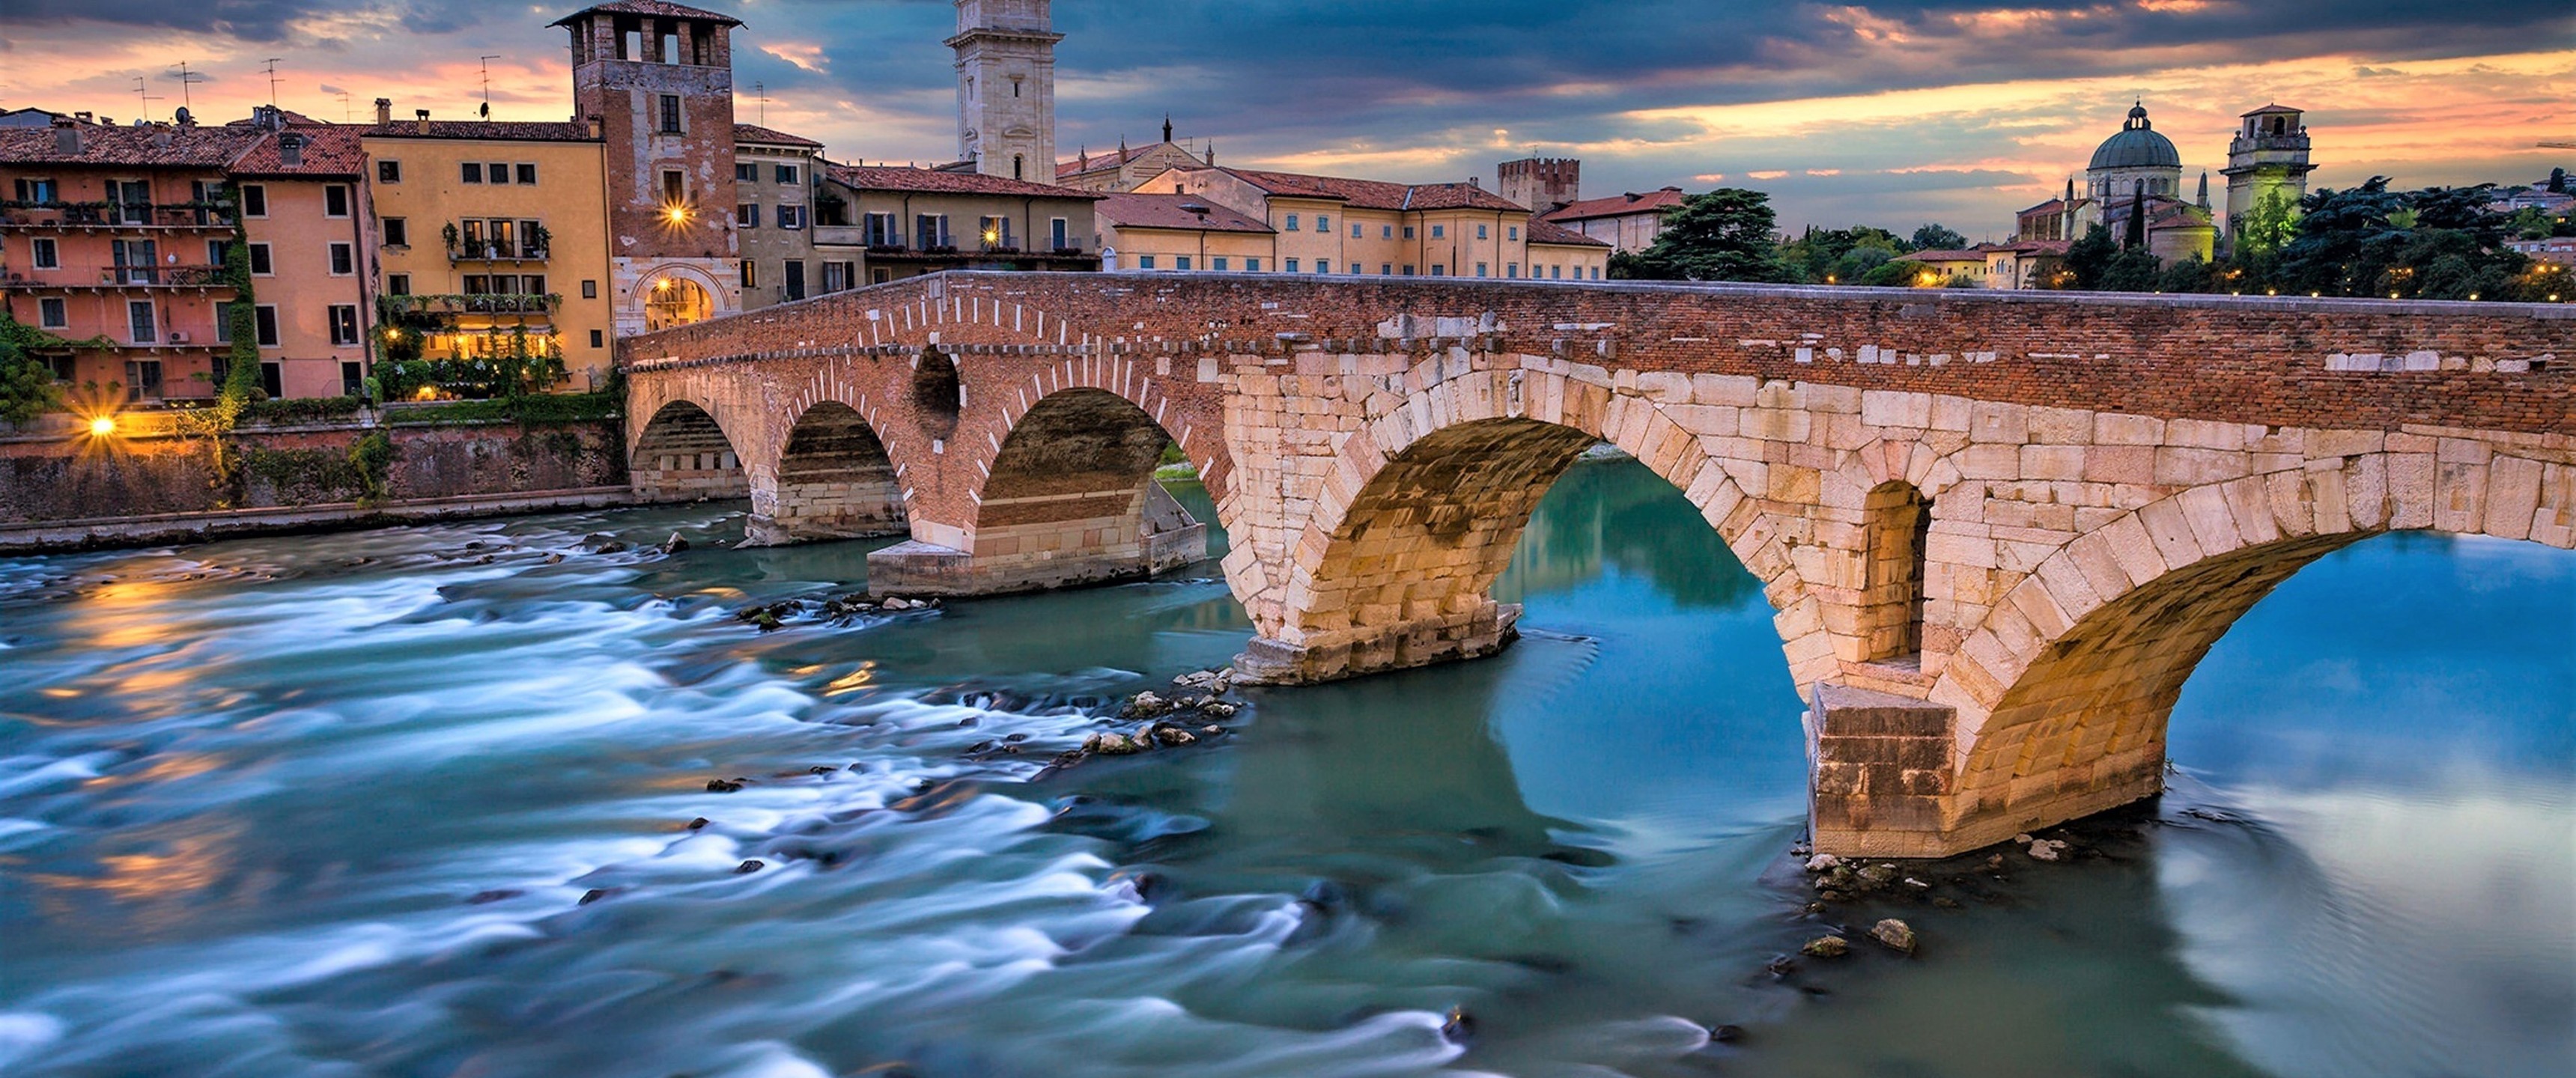 Download 3440x1440 Italy, Verona, Bridge, Dark Clouds, Buildings